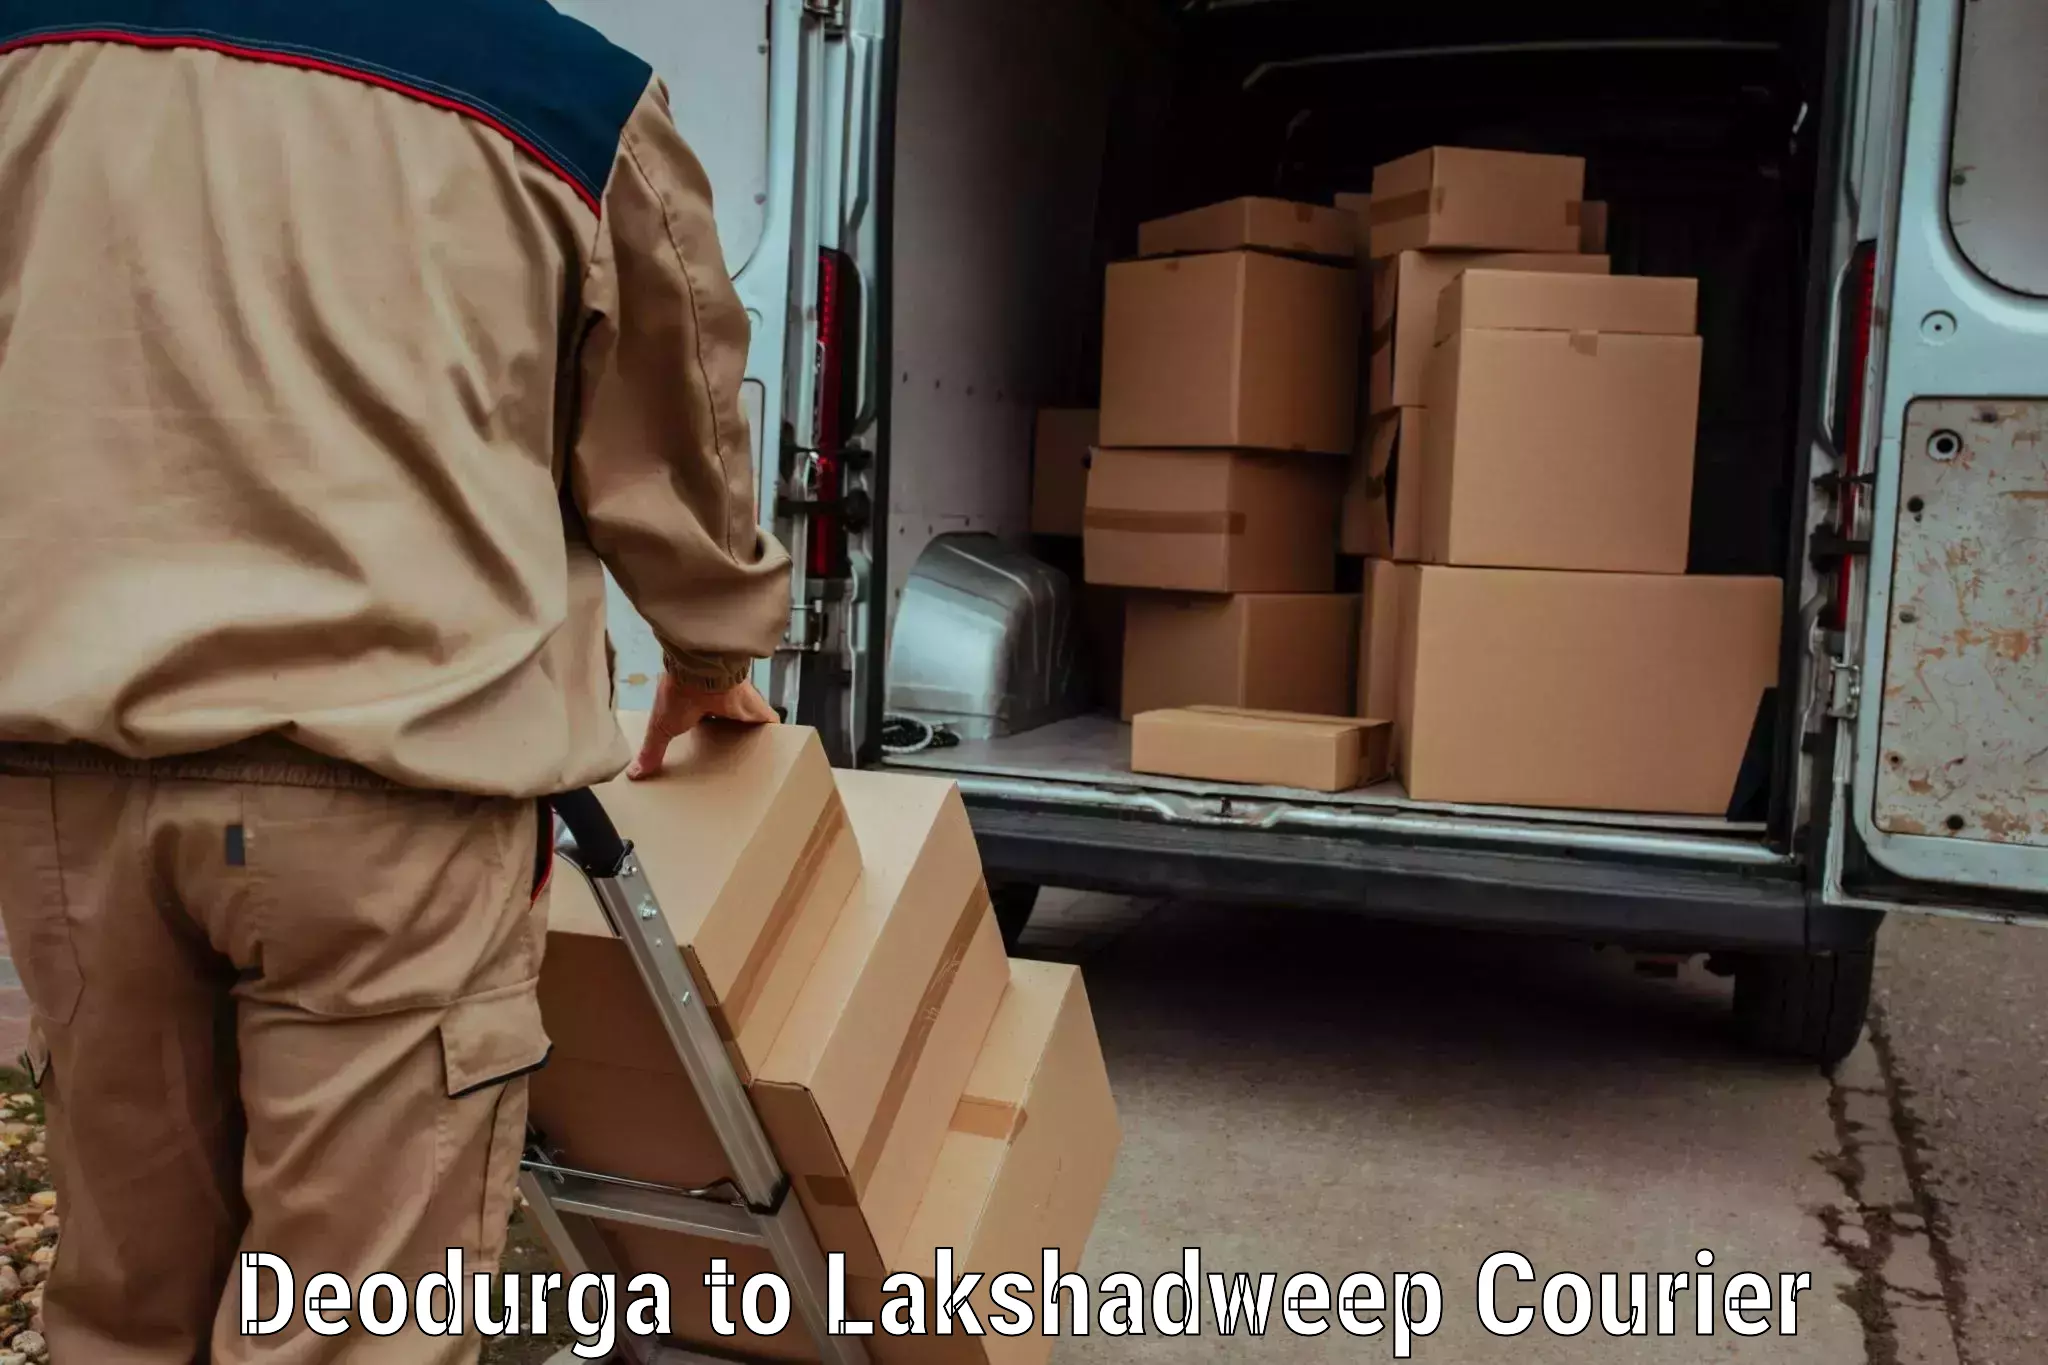 Luggage dispatch service Deodurga to Lakshadweep